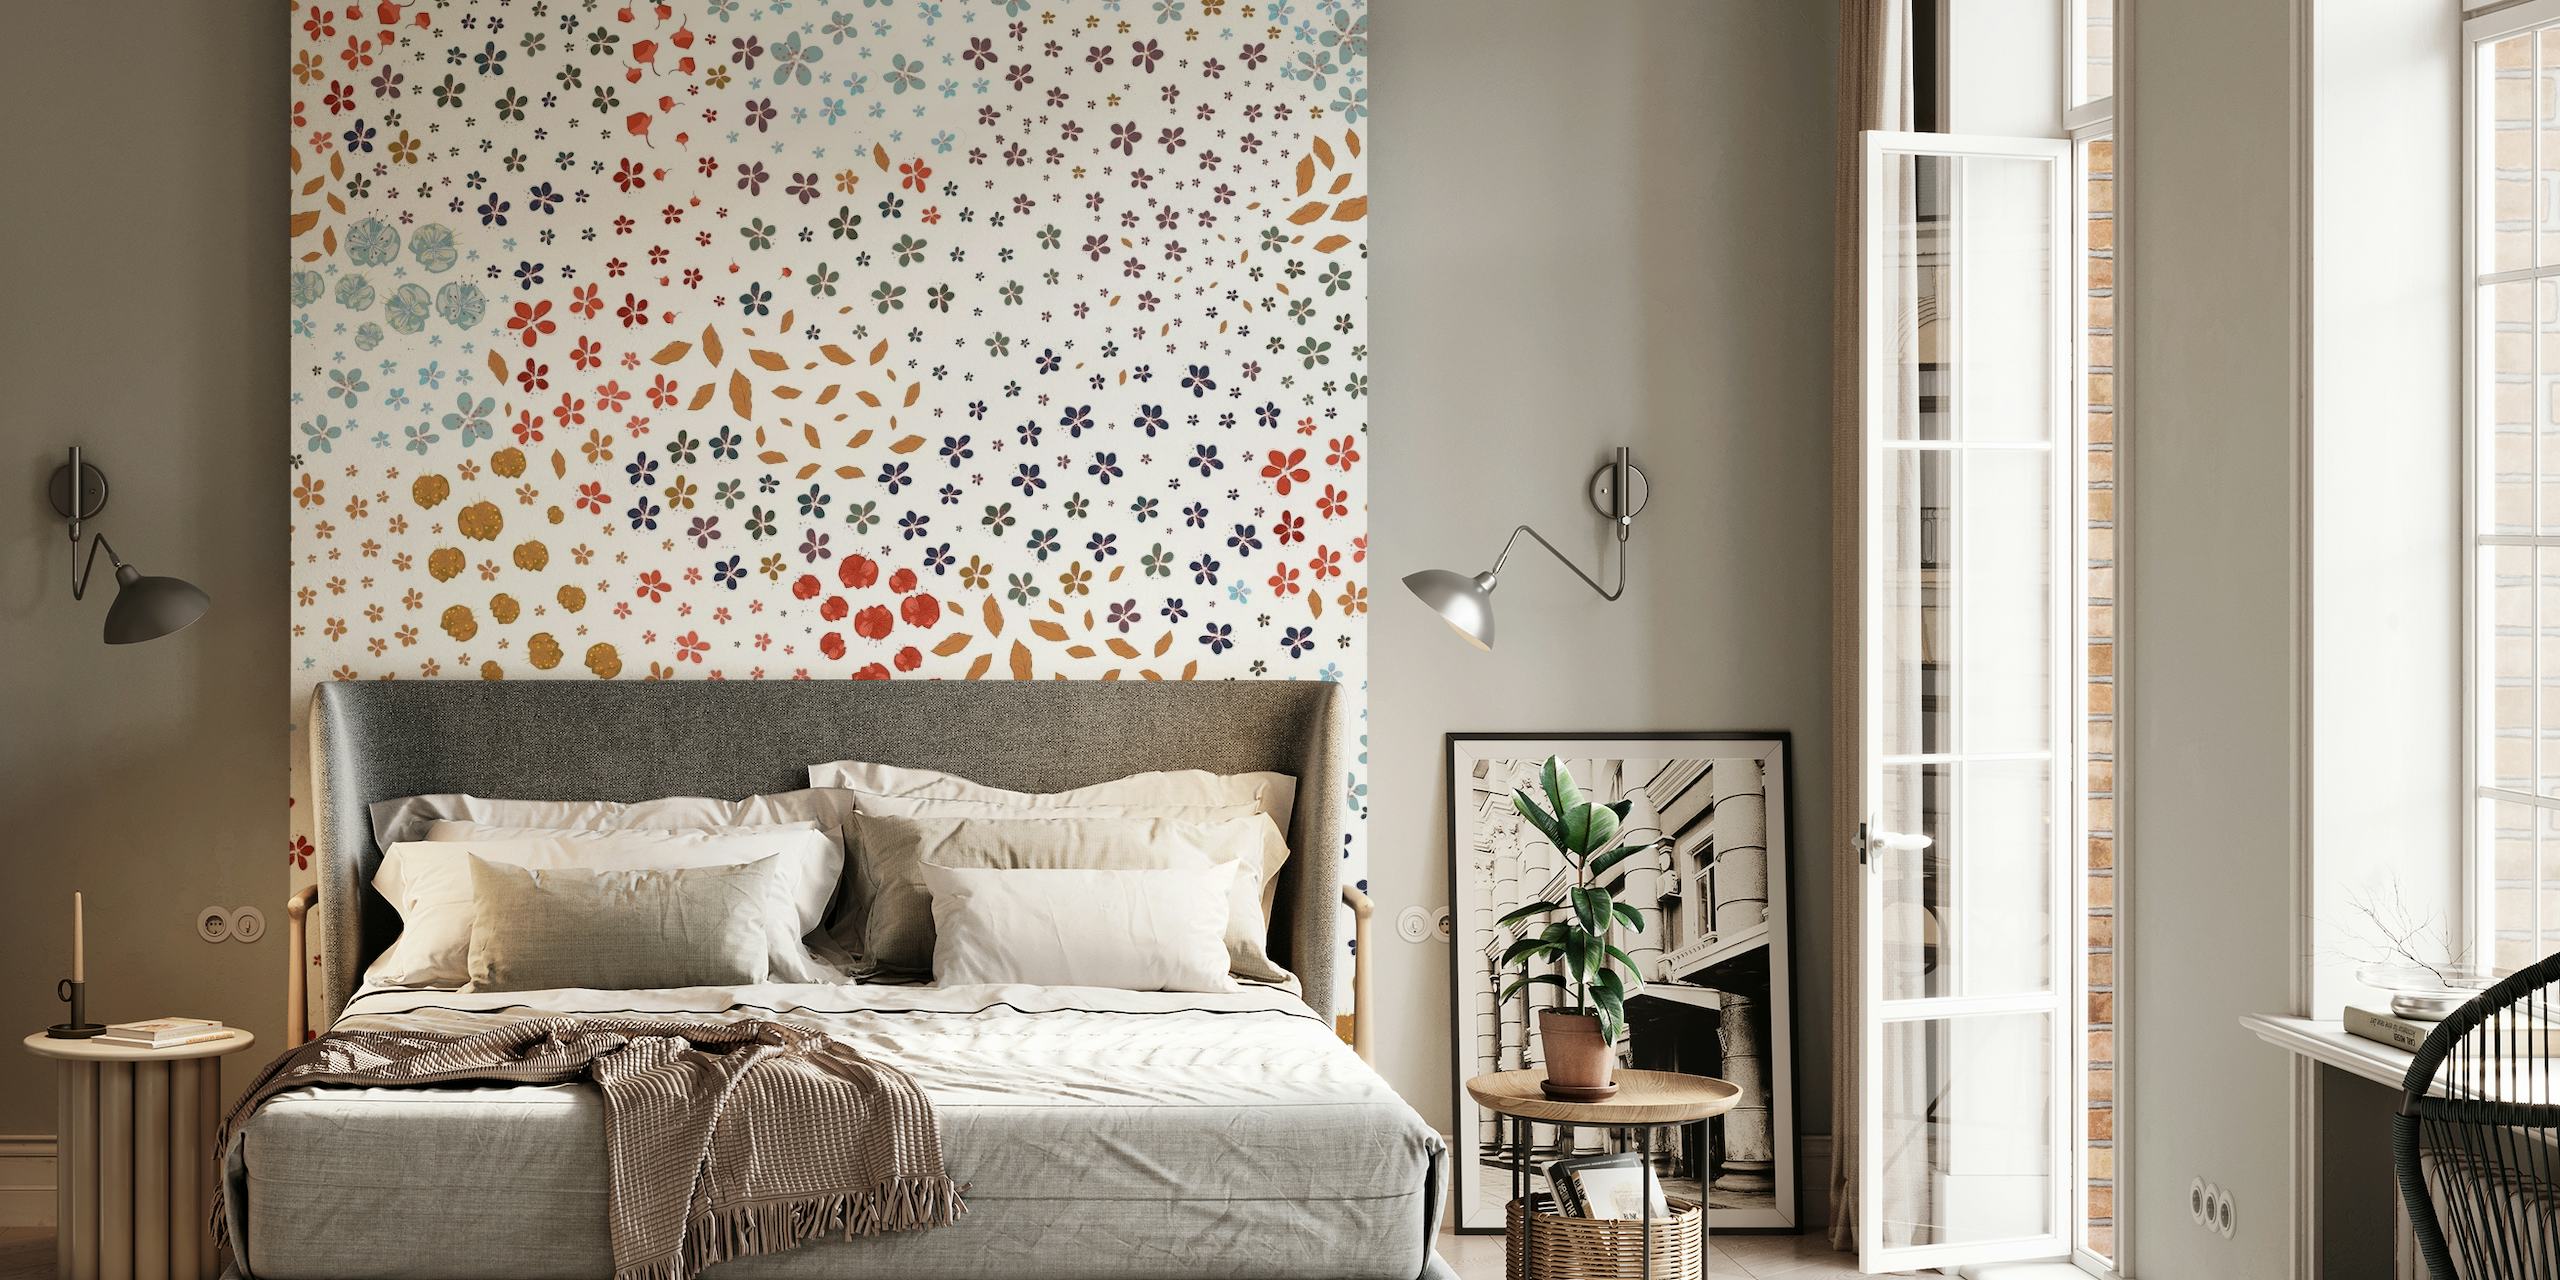 Colorido e intrincado mural de pared con temática primaveral y motivos florales y geométricos.